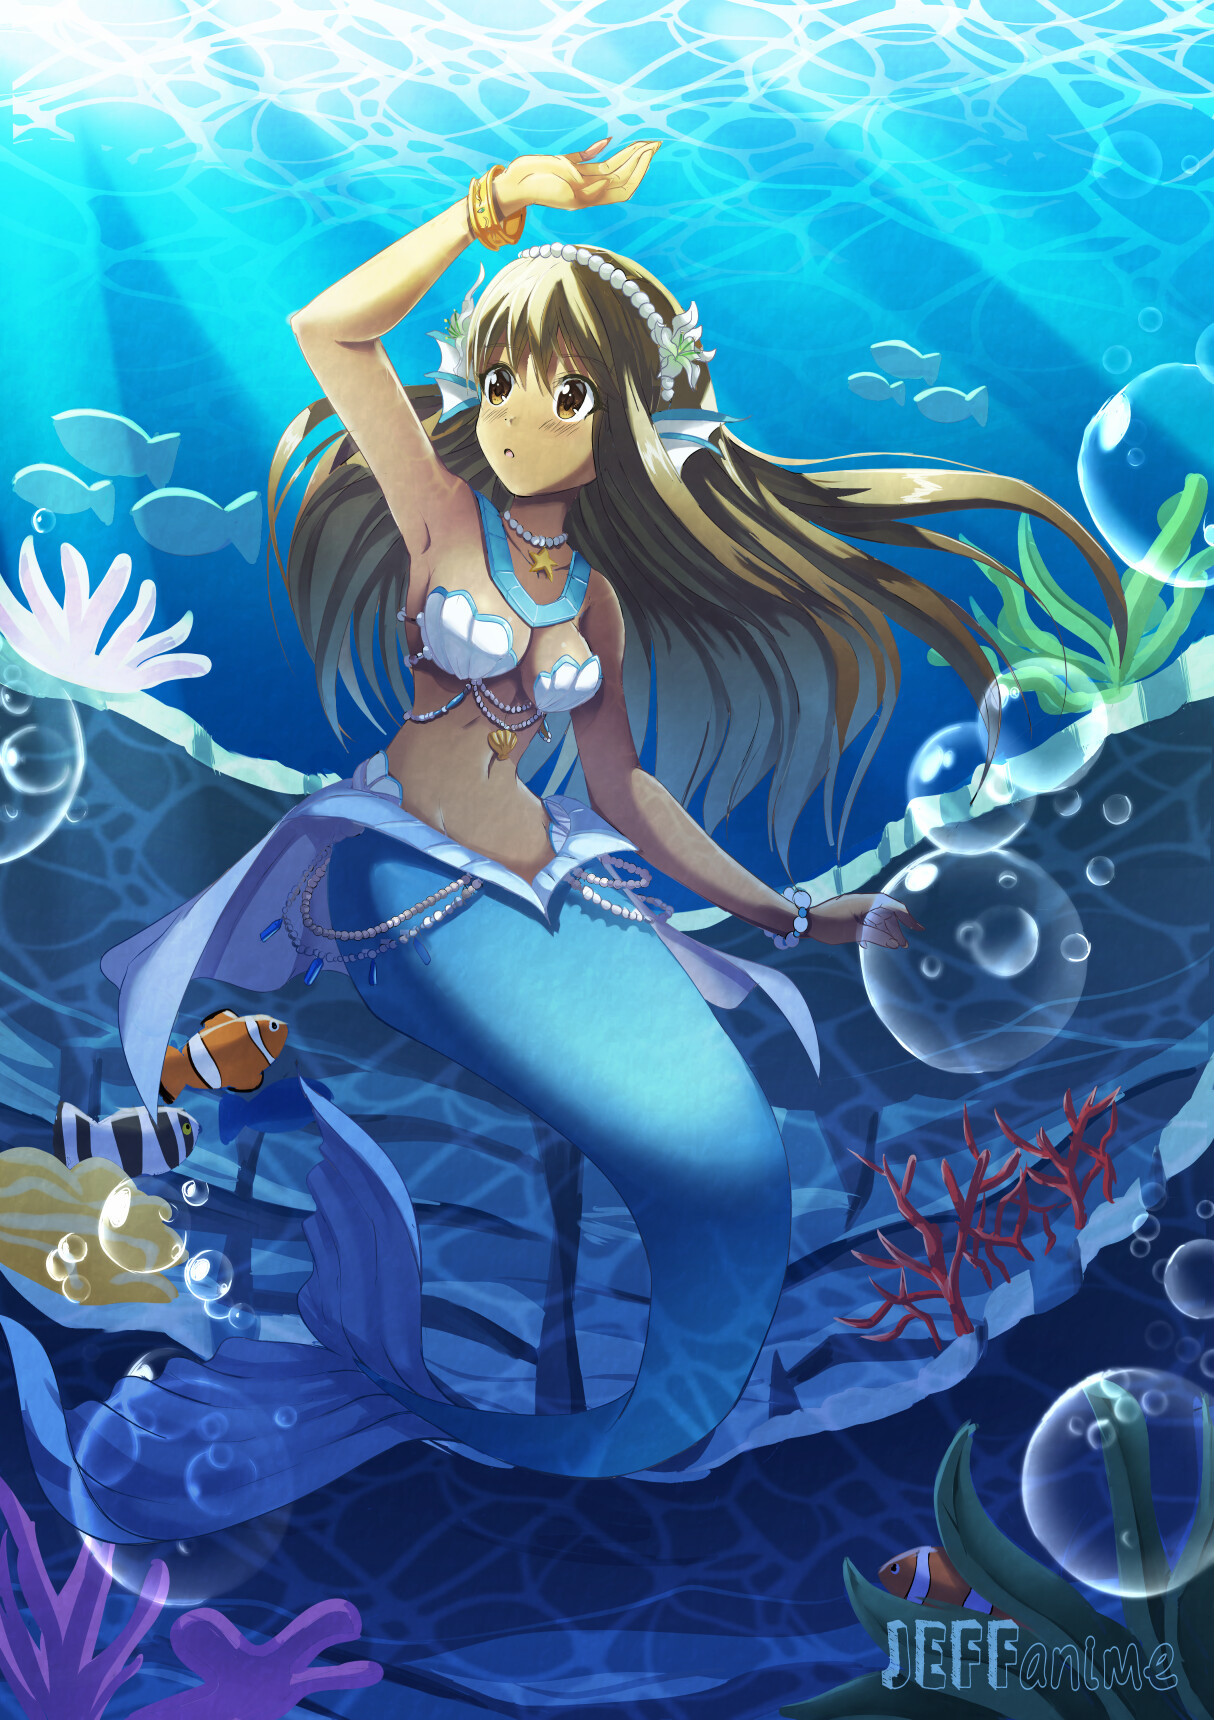 Mermaid | Anime mermaid, Mermaid drawings, Mermaid anime